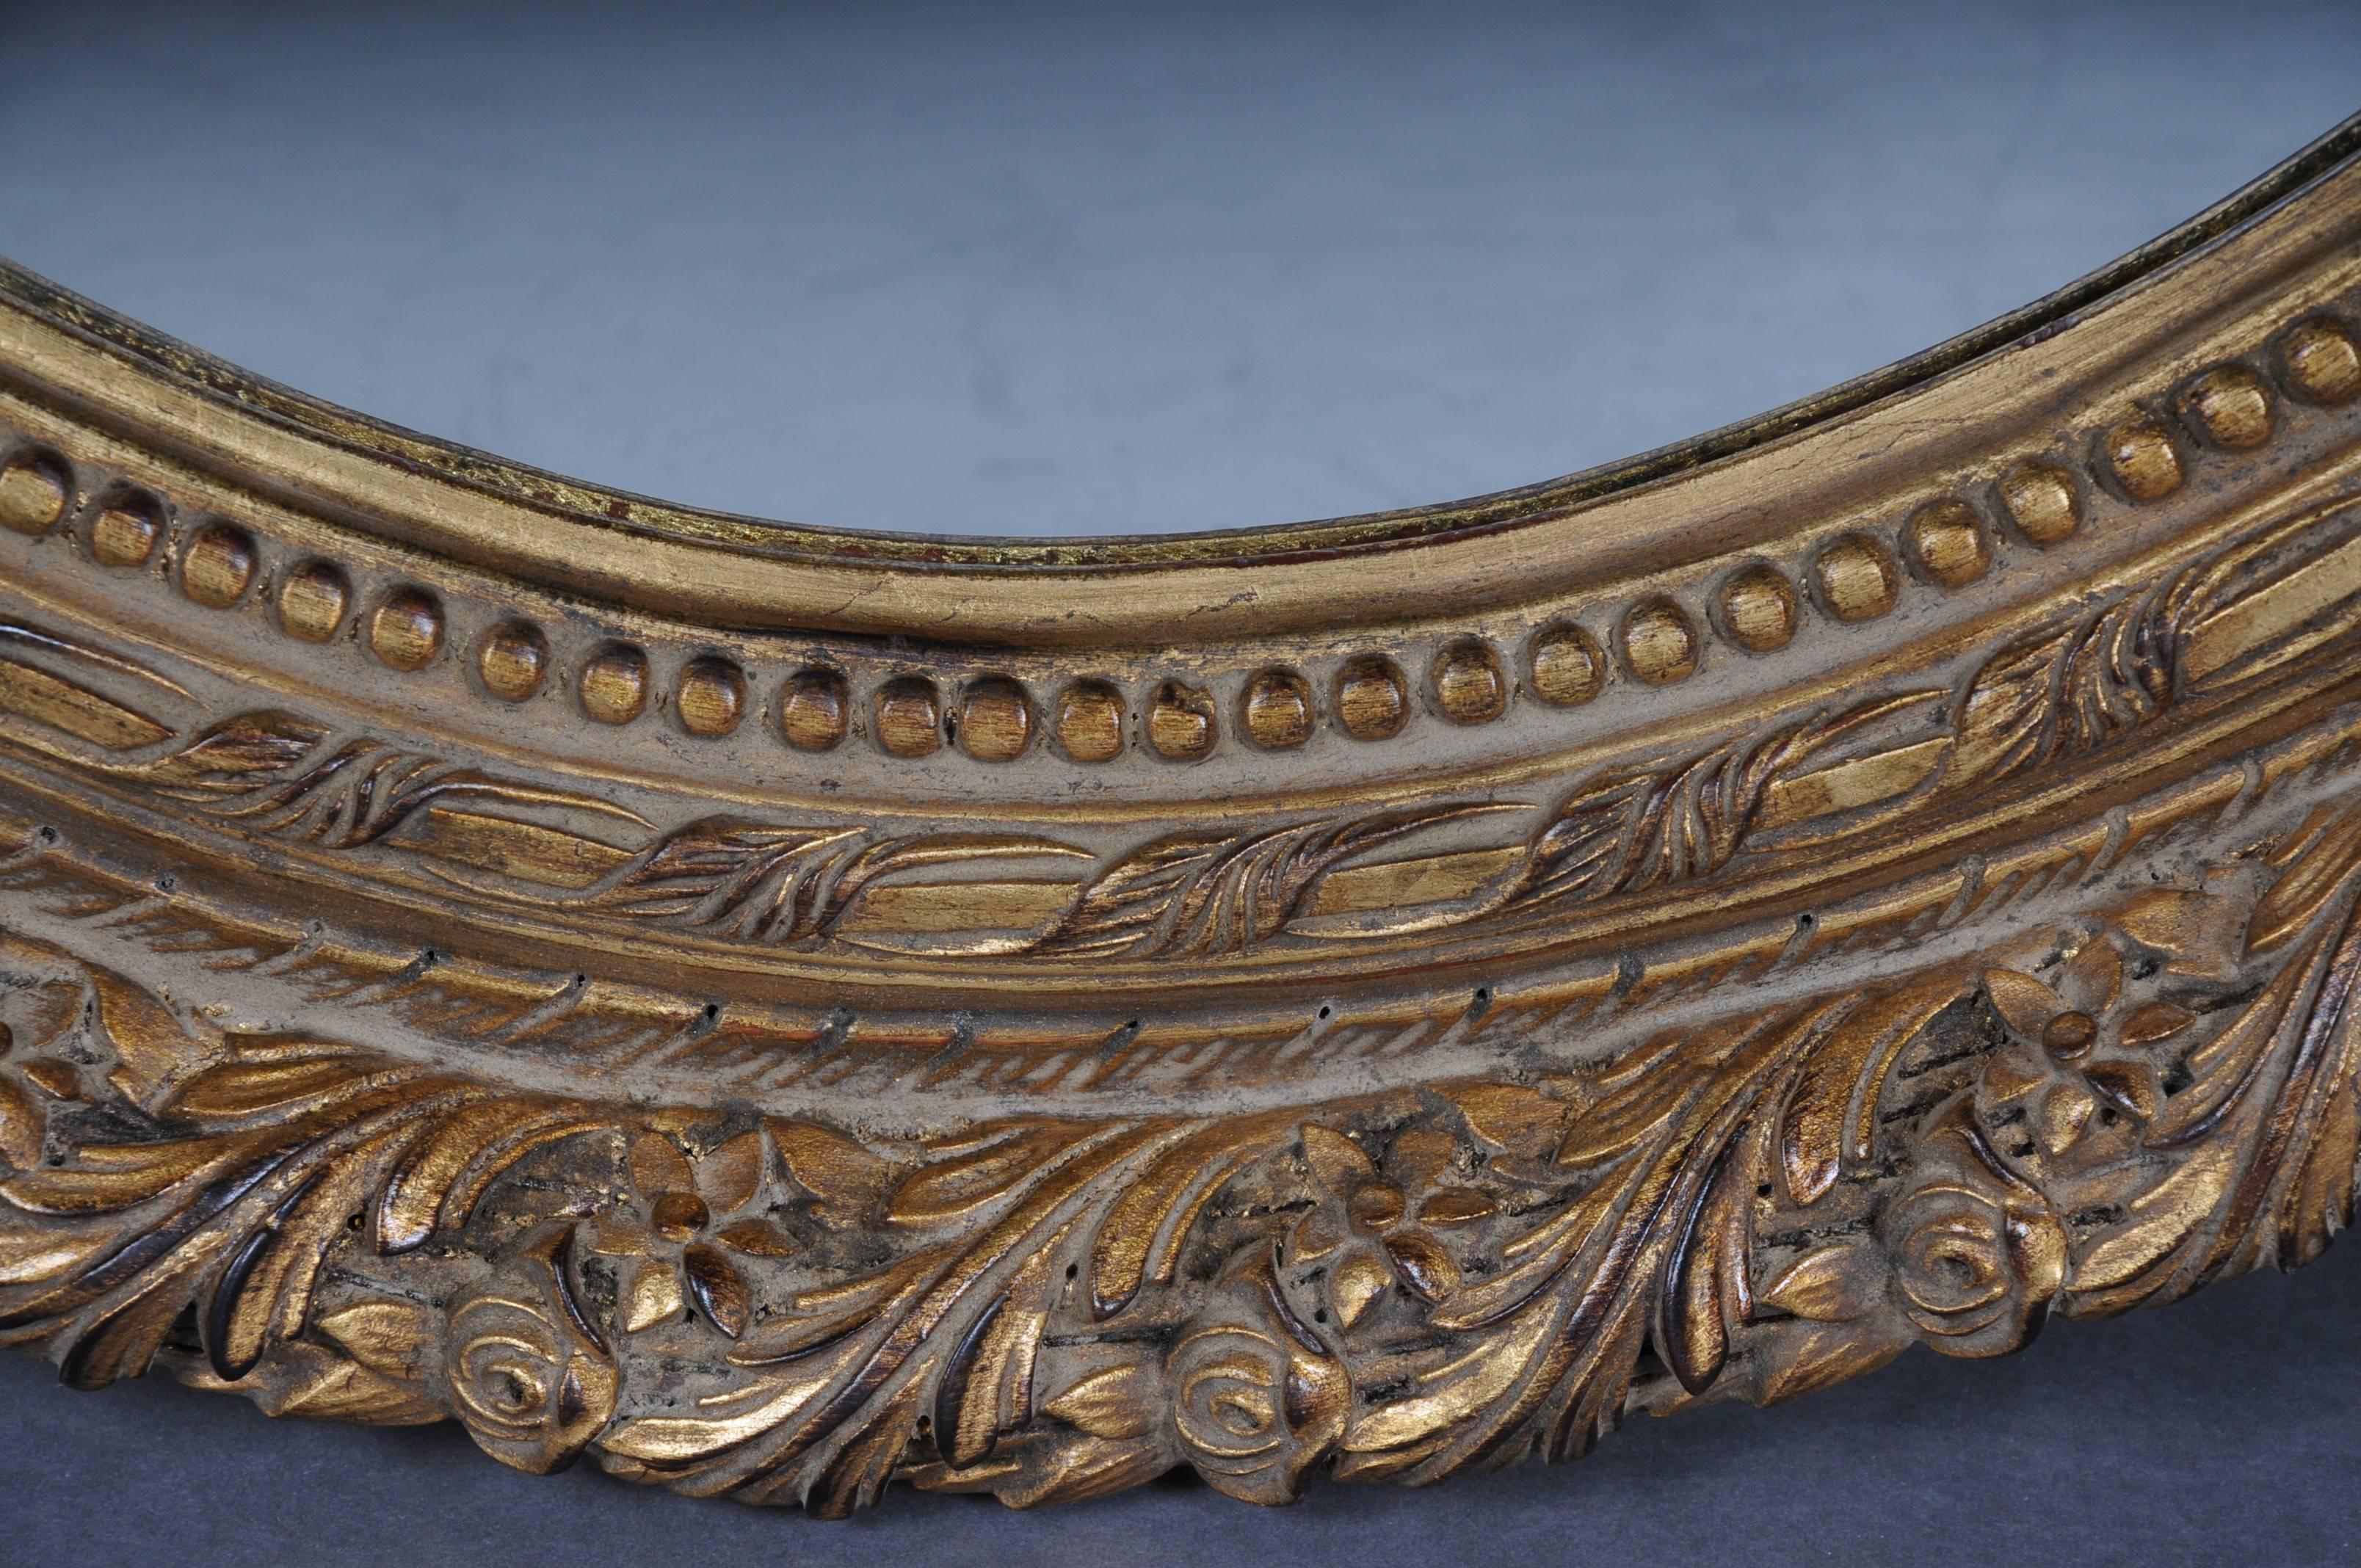 Cadre de miroir en bois de hêtre massif richement sculpté et doré à la feuille. Sculpture très élaborée réalisée à la main.


(M-Dom-41).